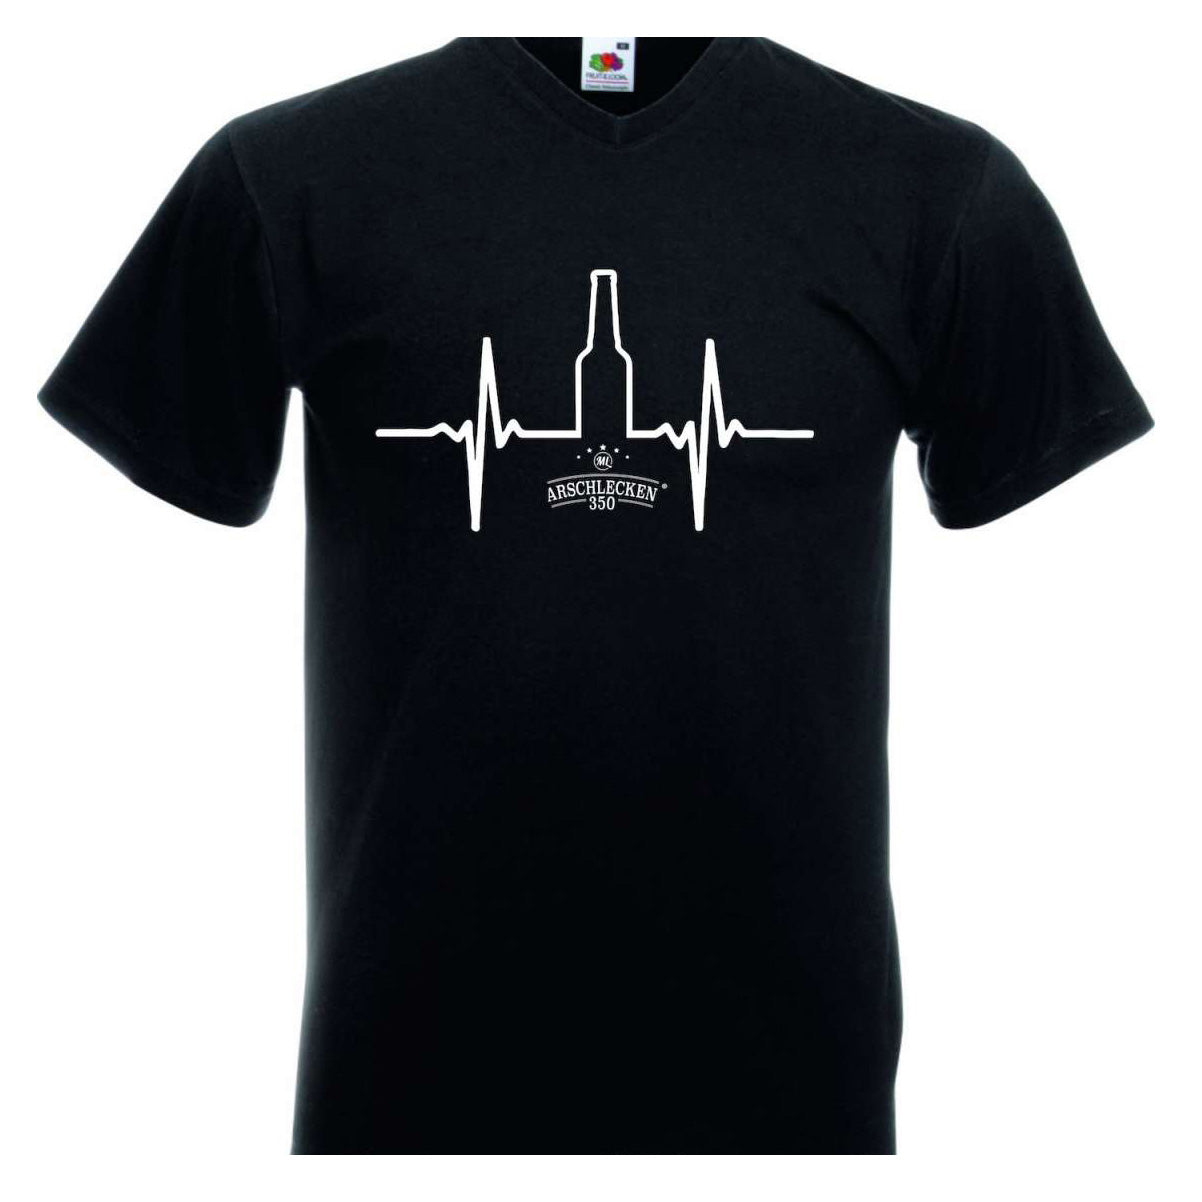 T-Shirt Arschlecken 350 Herzschlag